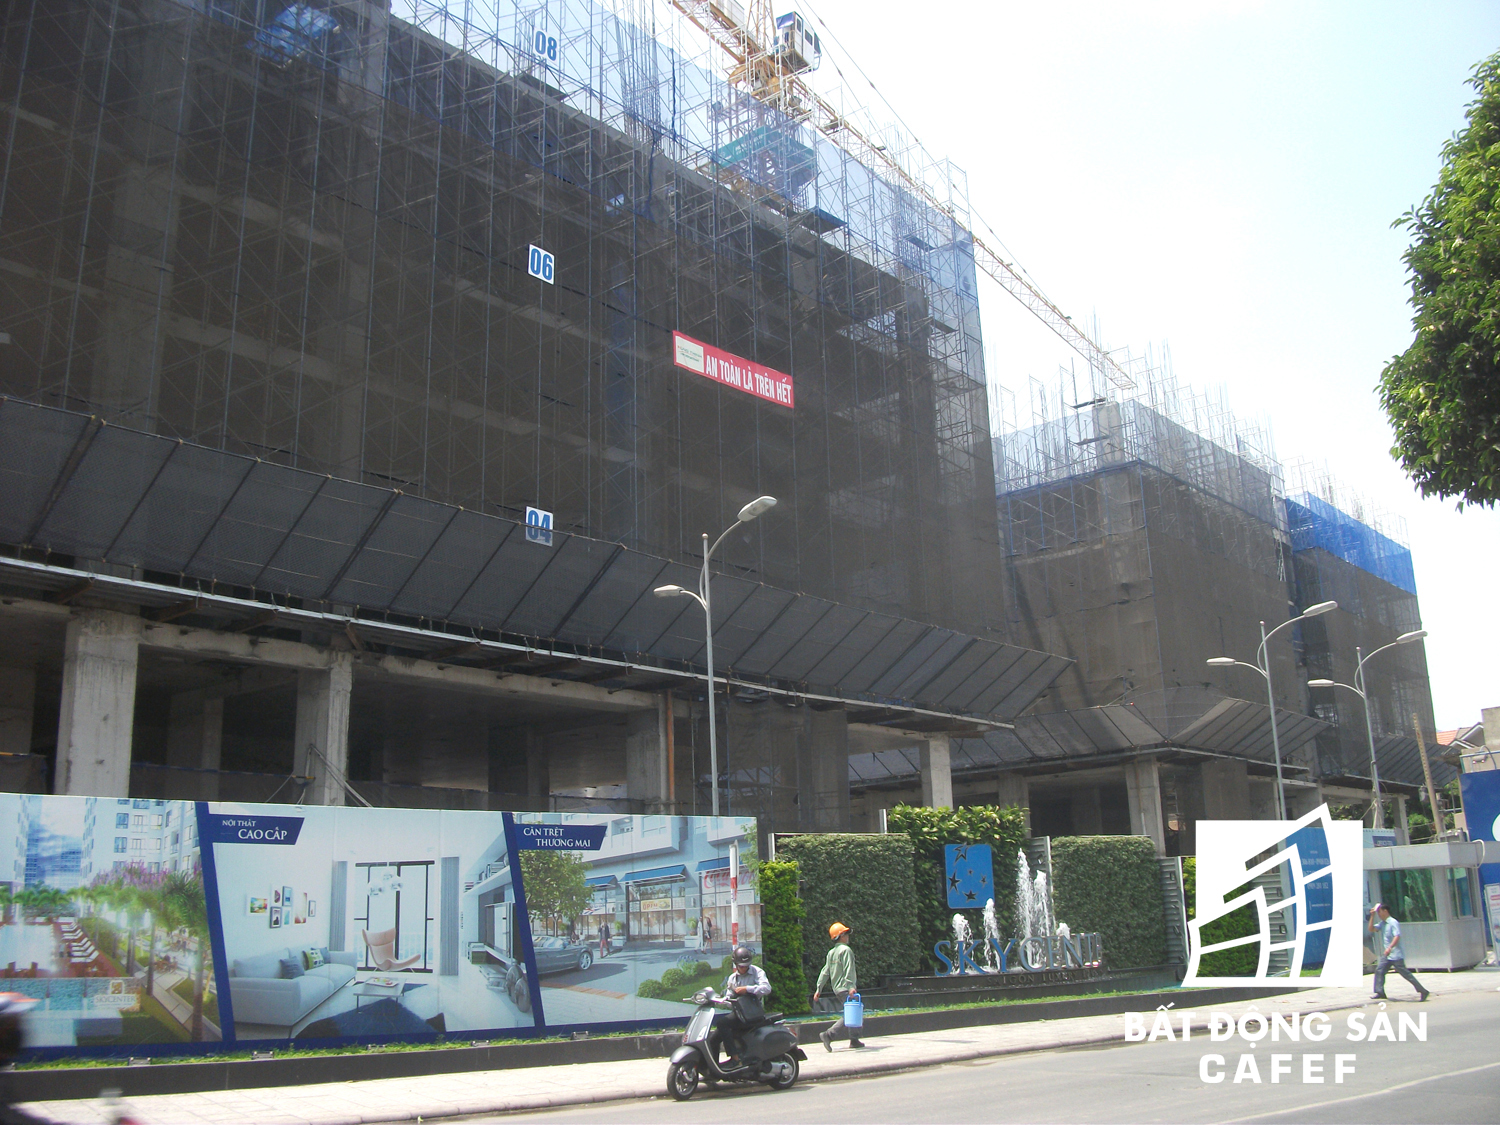 
Đến nay, tuyến đường này đã có ít nhất 10 dự án nhà cao tầng đang được xây dựng và nhiều dự án khác đang chuẩn bị triển khai. Tính đến tháng 12/2016, dọc theo đường Phạm Văn Đồng có khoảng 7.000 sản phẩm căn hộ đã và đang được đưa ra thị trường, giá bán phổ biến trên dưới 3 tỷ đồng/căn.
